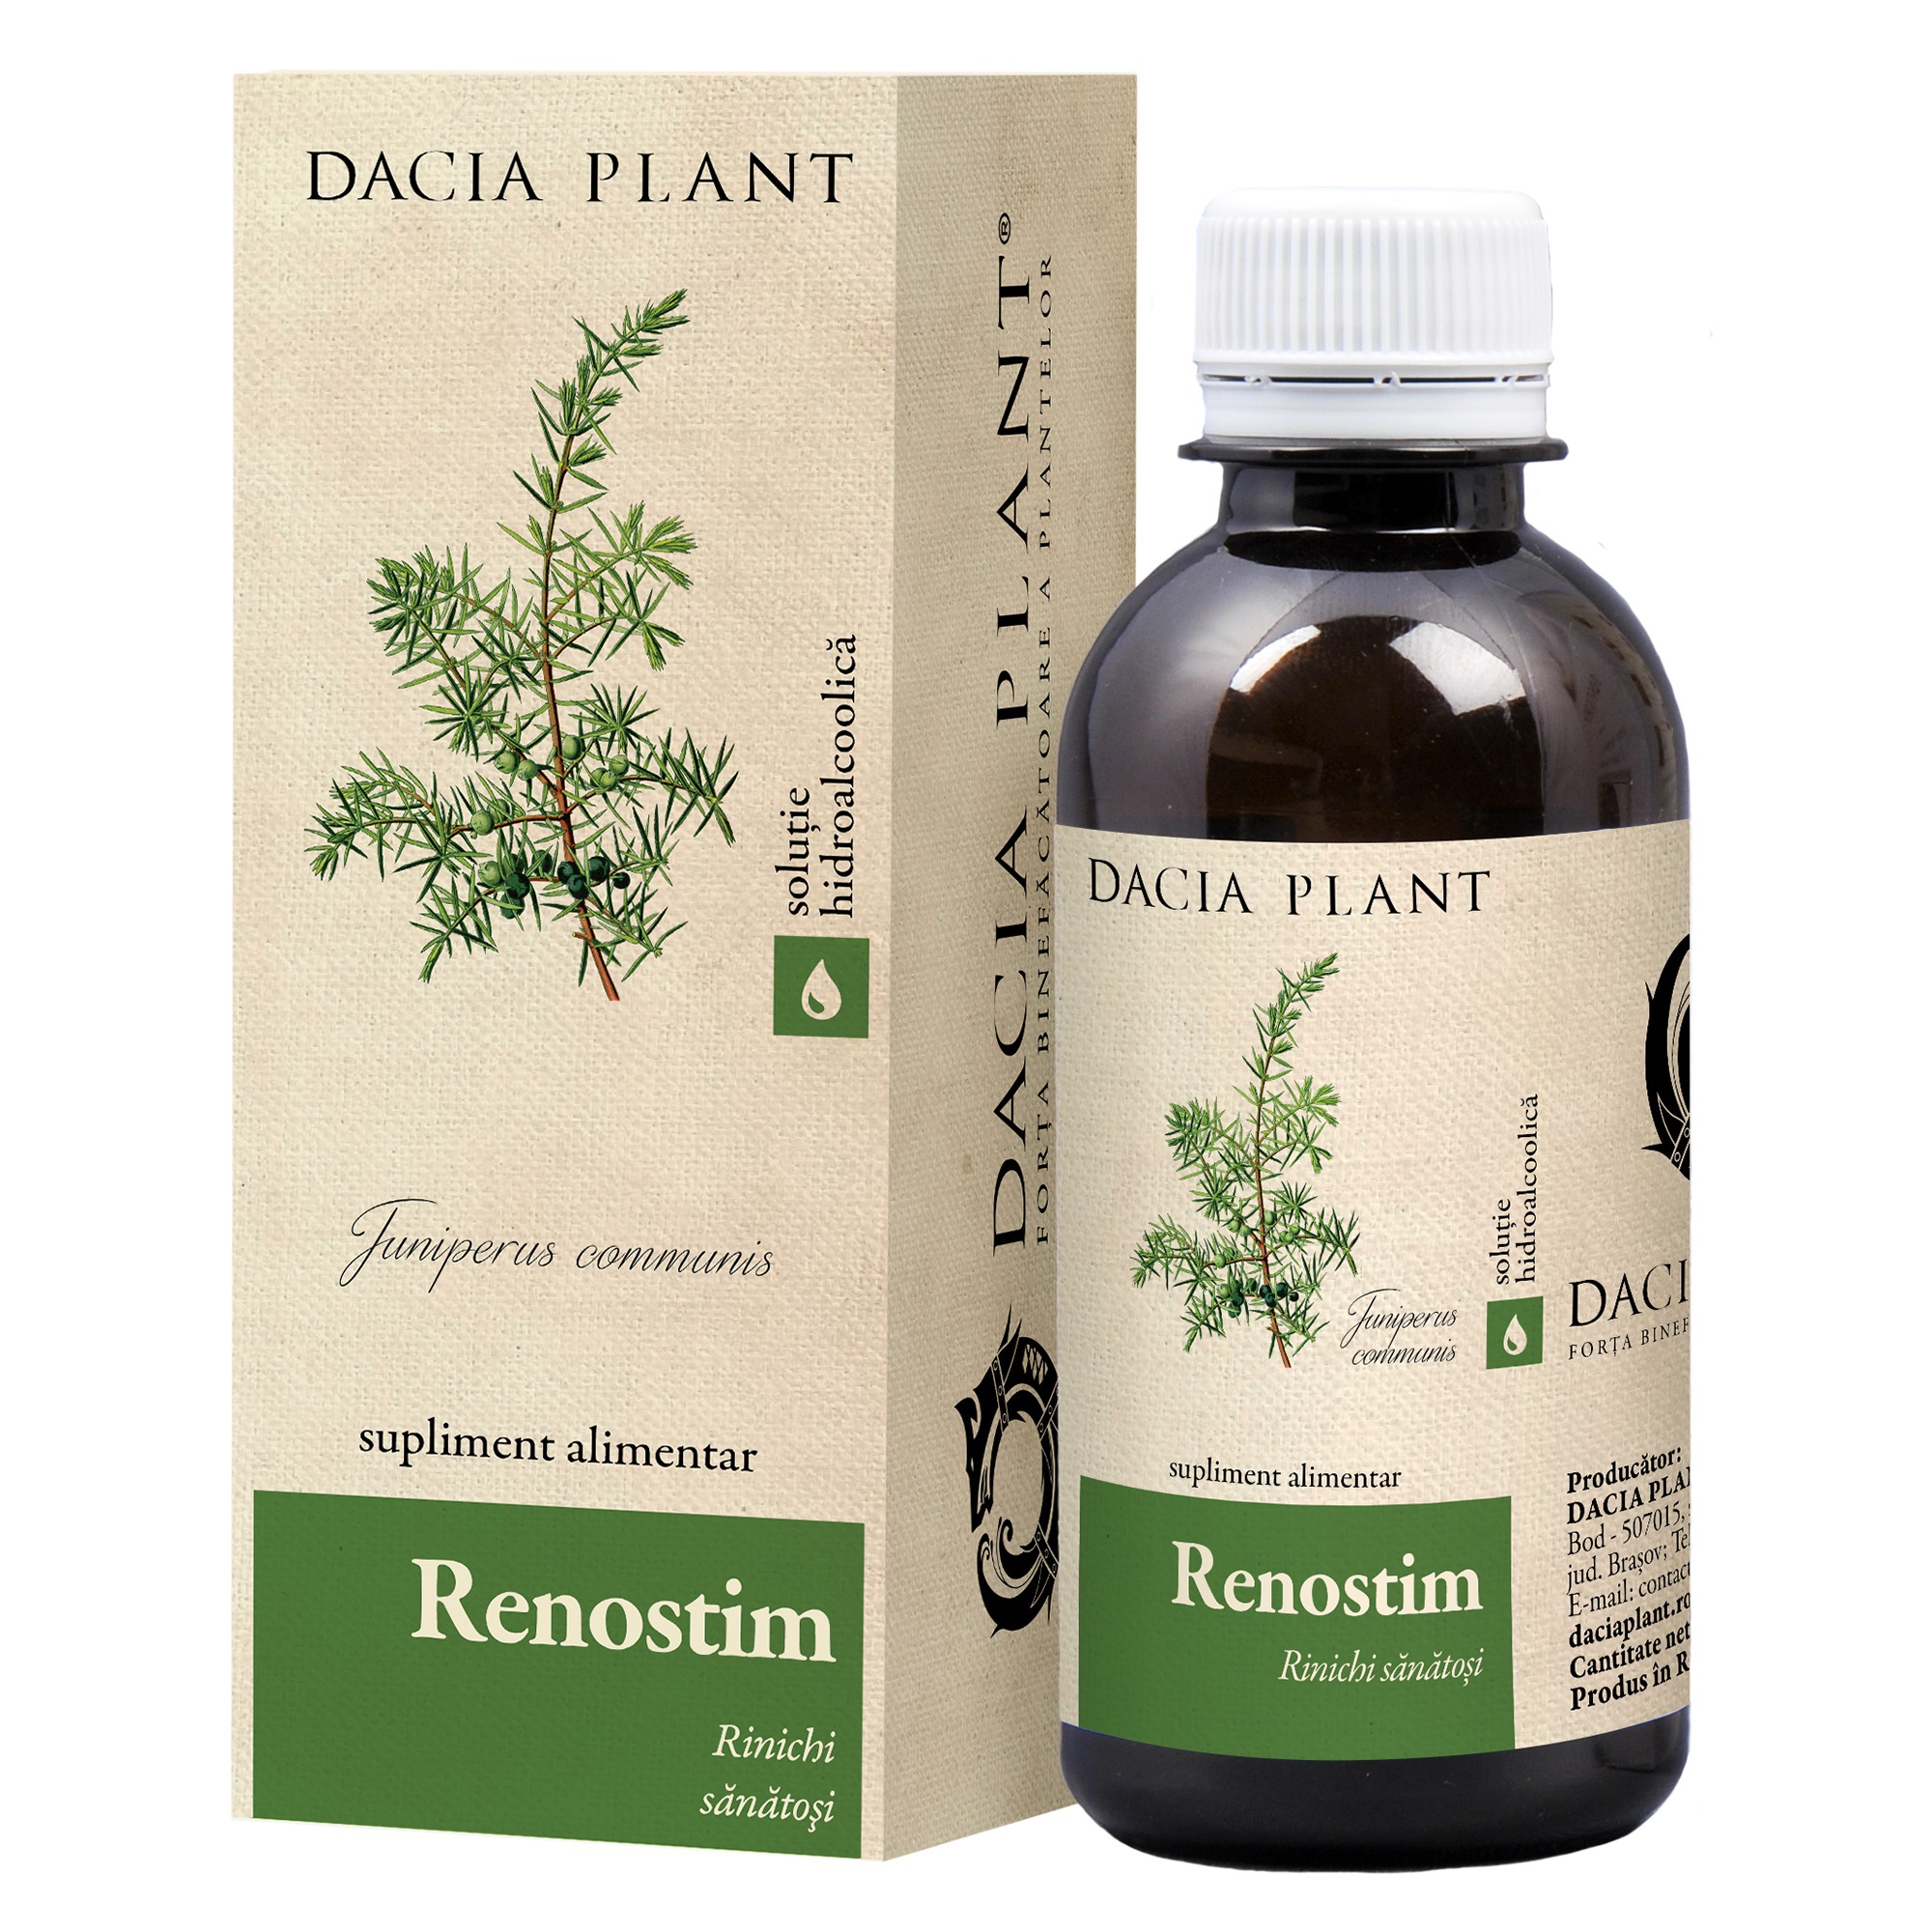 Dezinfectante urinare - Renostim, 200 ml, Dacia Plant, sinapis.ro